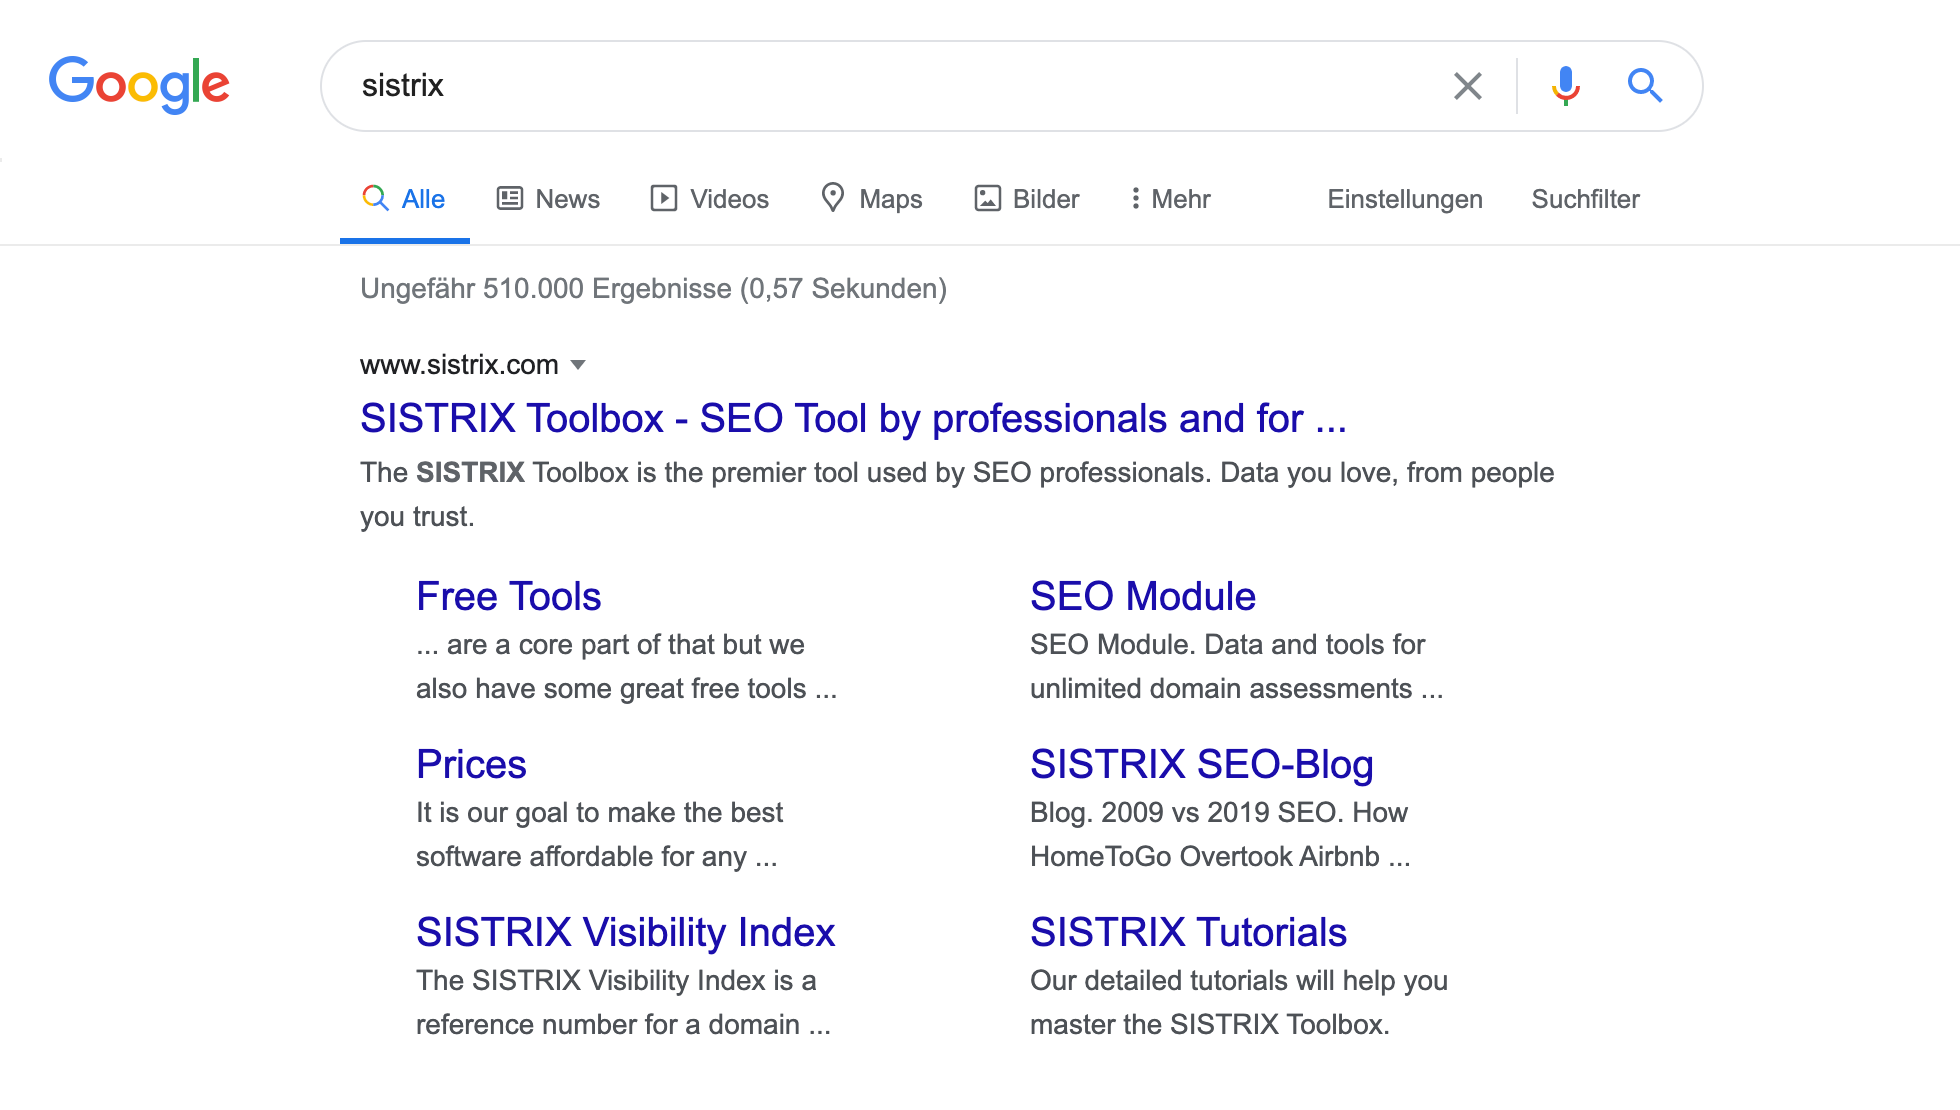 Suchergebnisseite bei Google für den Suchbegriff "sistrix"